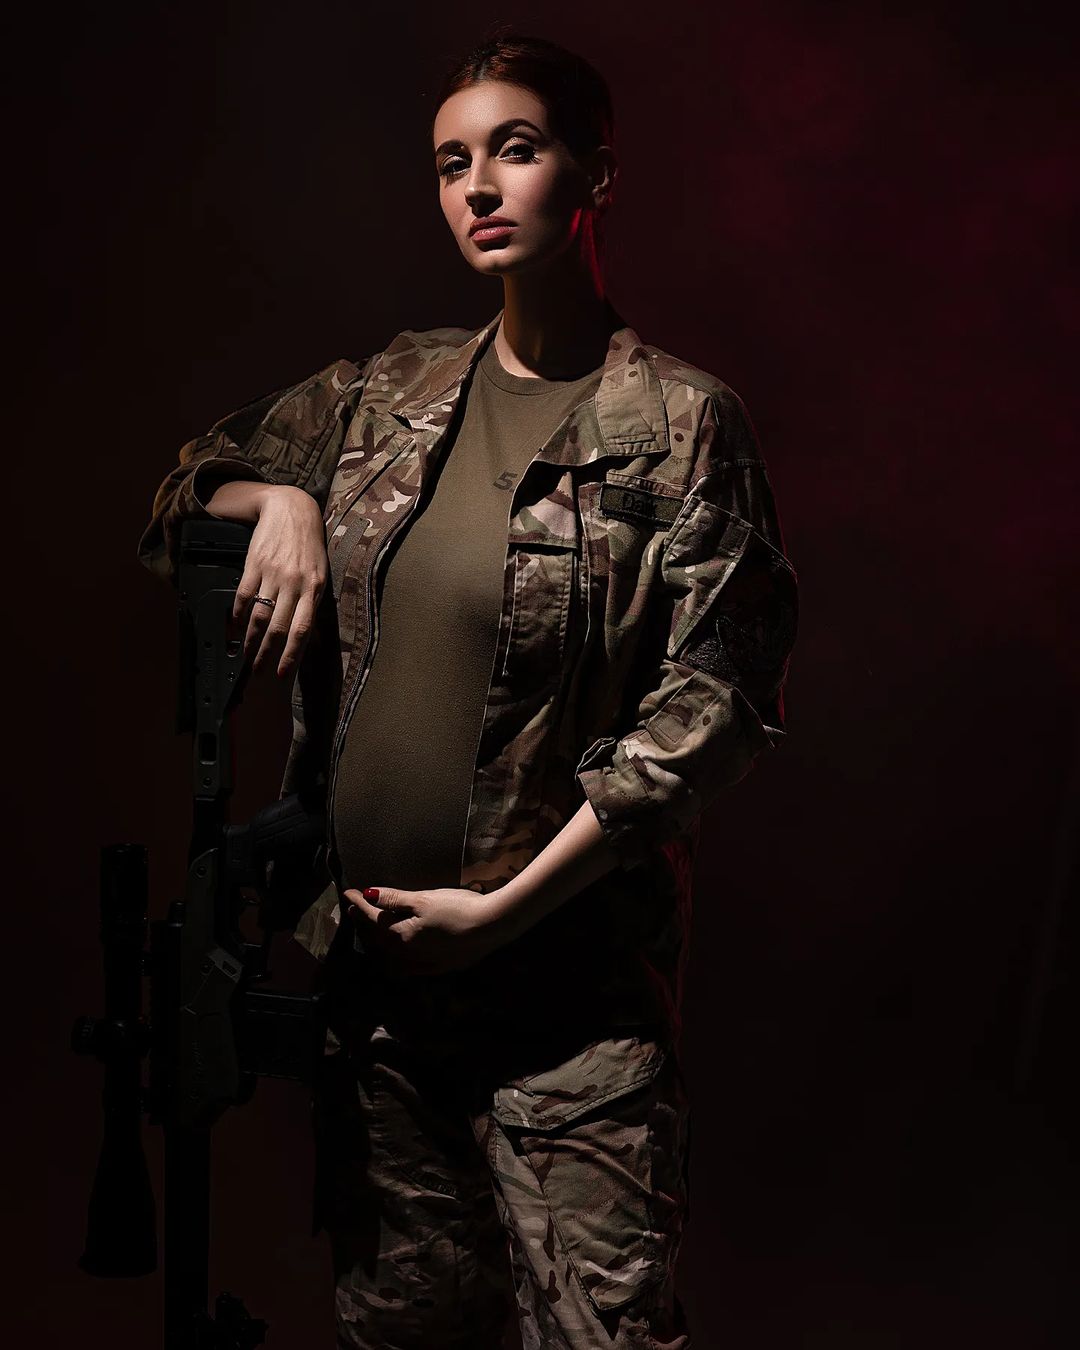 Снайперка Євгенія Емеральд знялася у стильній «вагітній» фотосесії